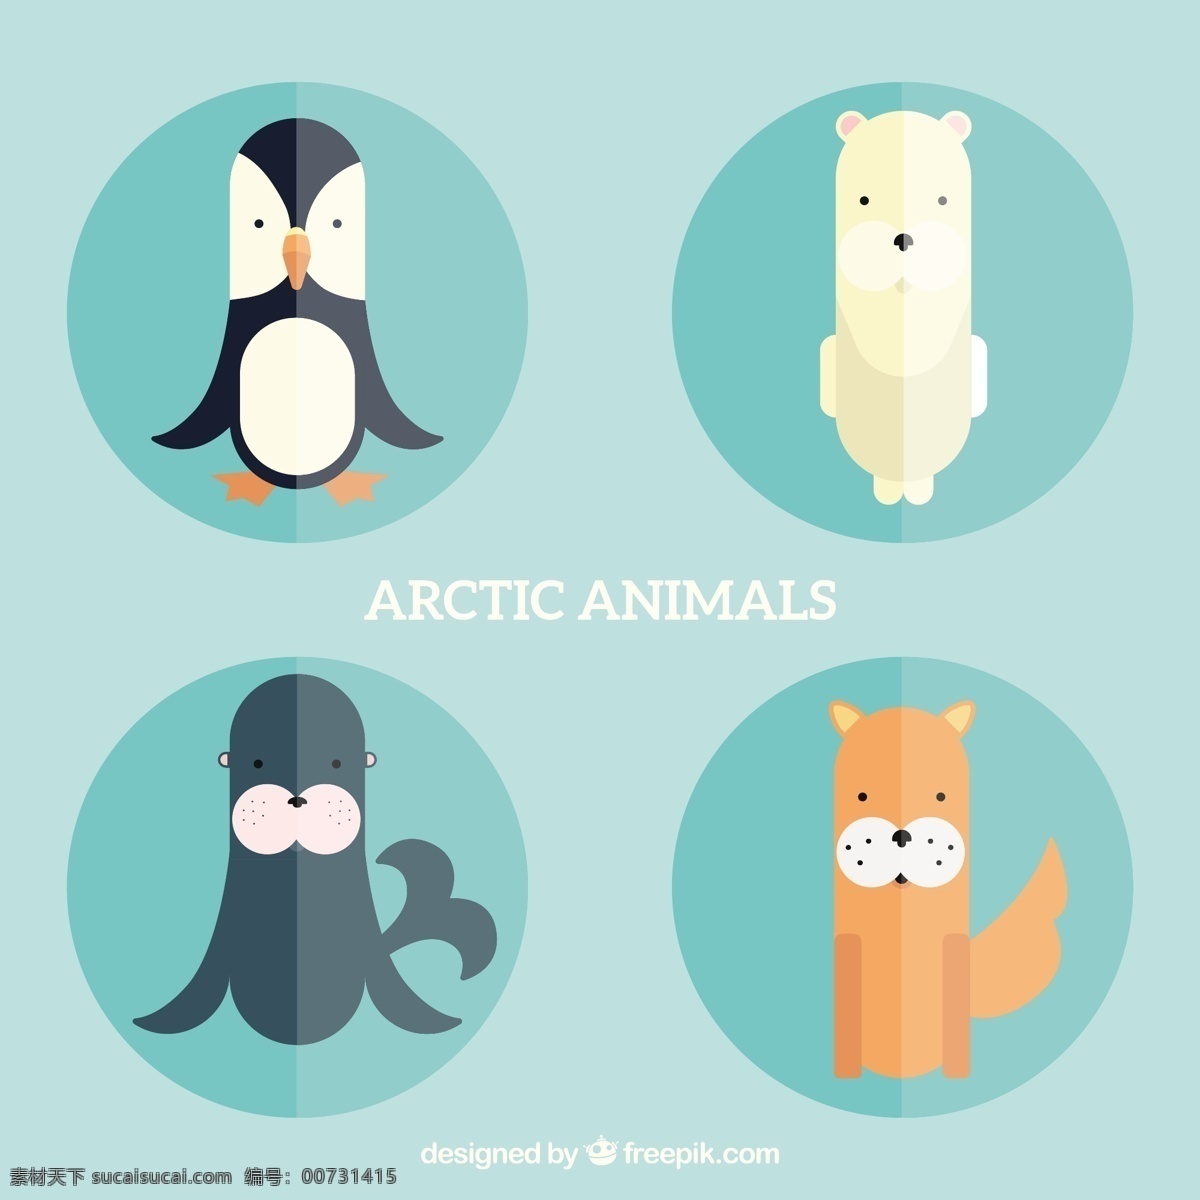 平面设计 中 北极 动物 自然 卡通 冬季 平坦 熊 海豹 企鹅 冷 卡通动物 野生 北极熊 青色 天蓝色